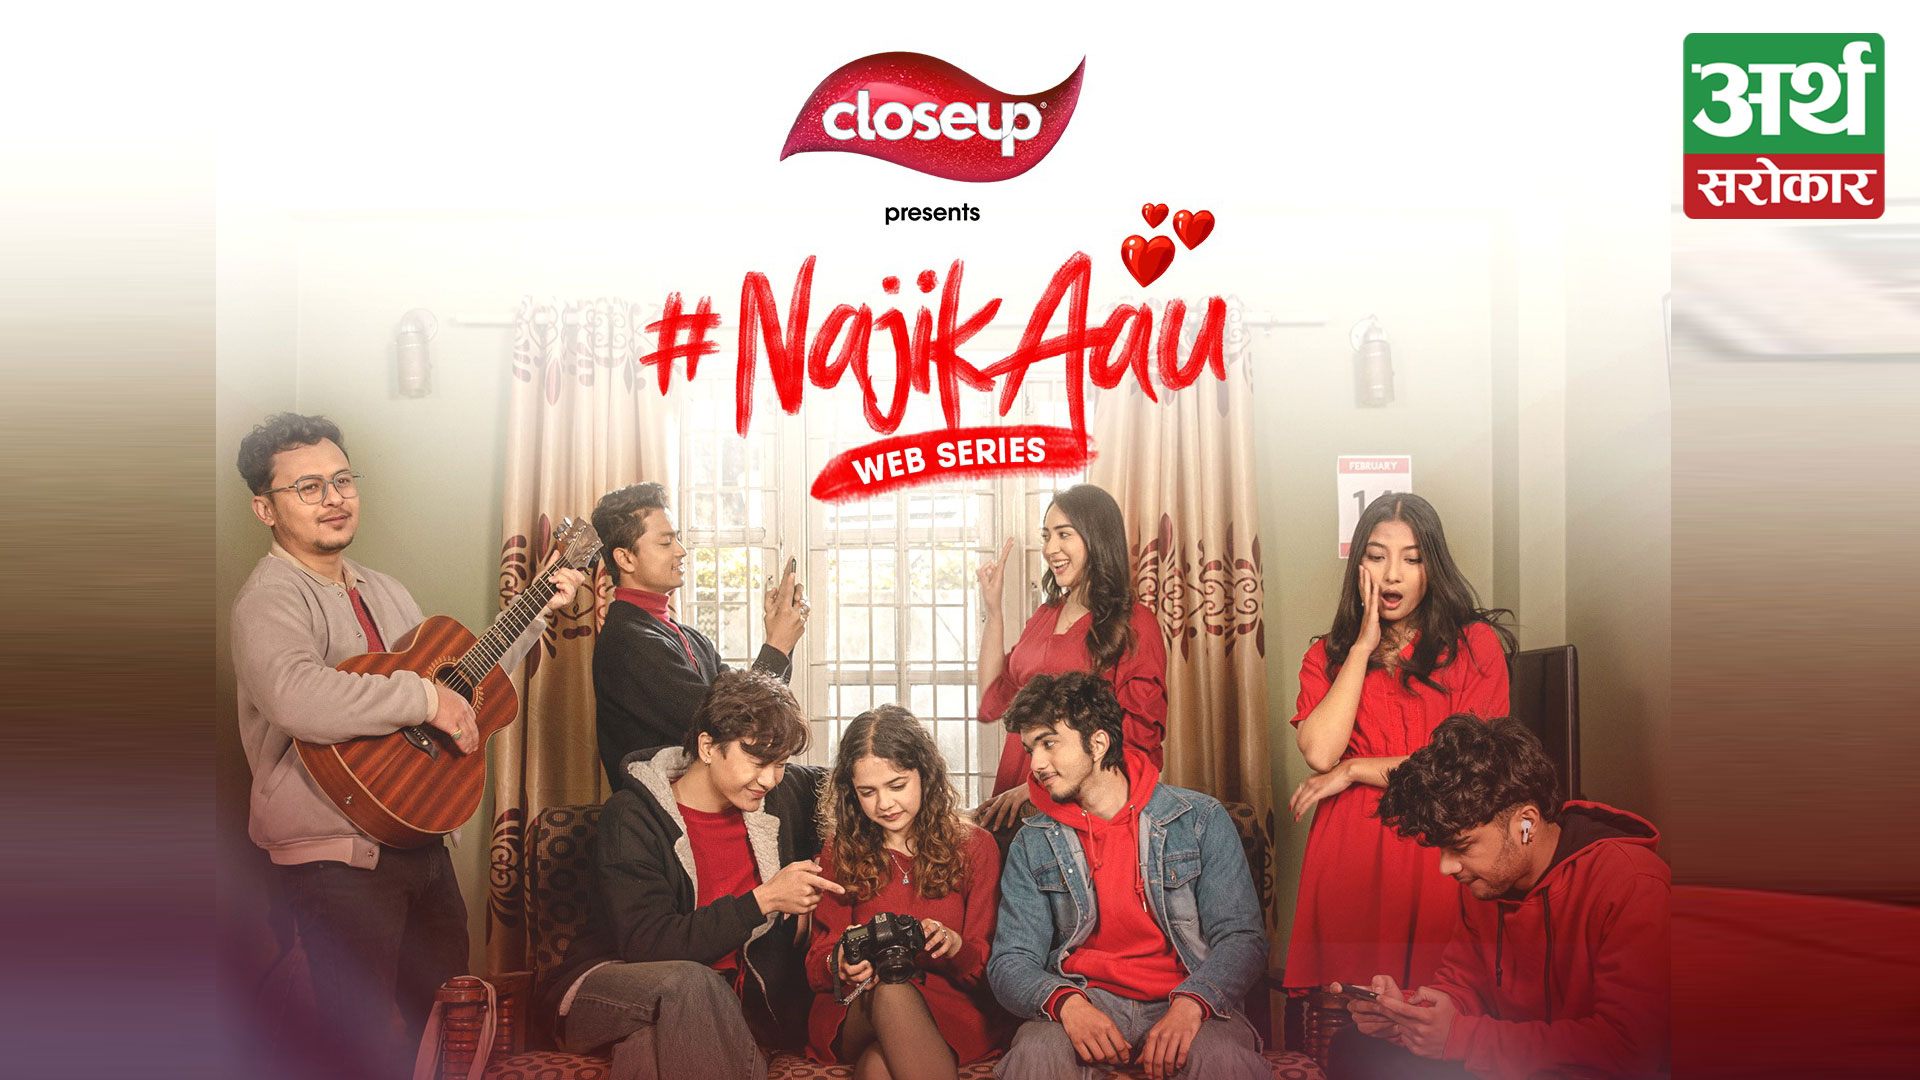 Closeup Nepal makes a comeback with the #NajikAau digital campaign